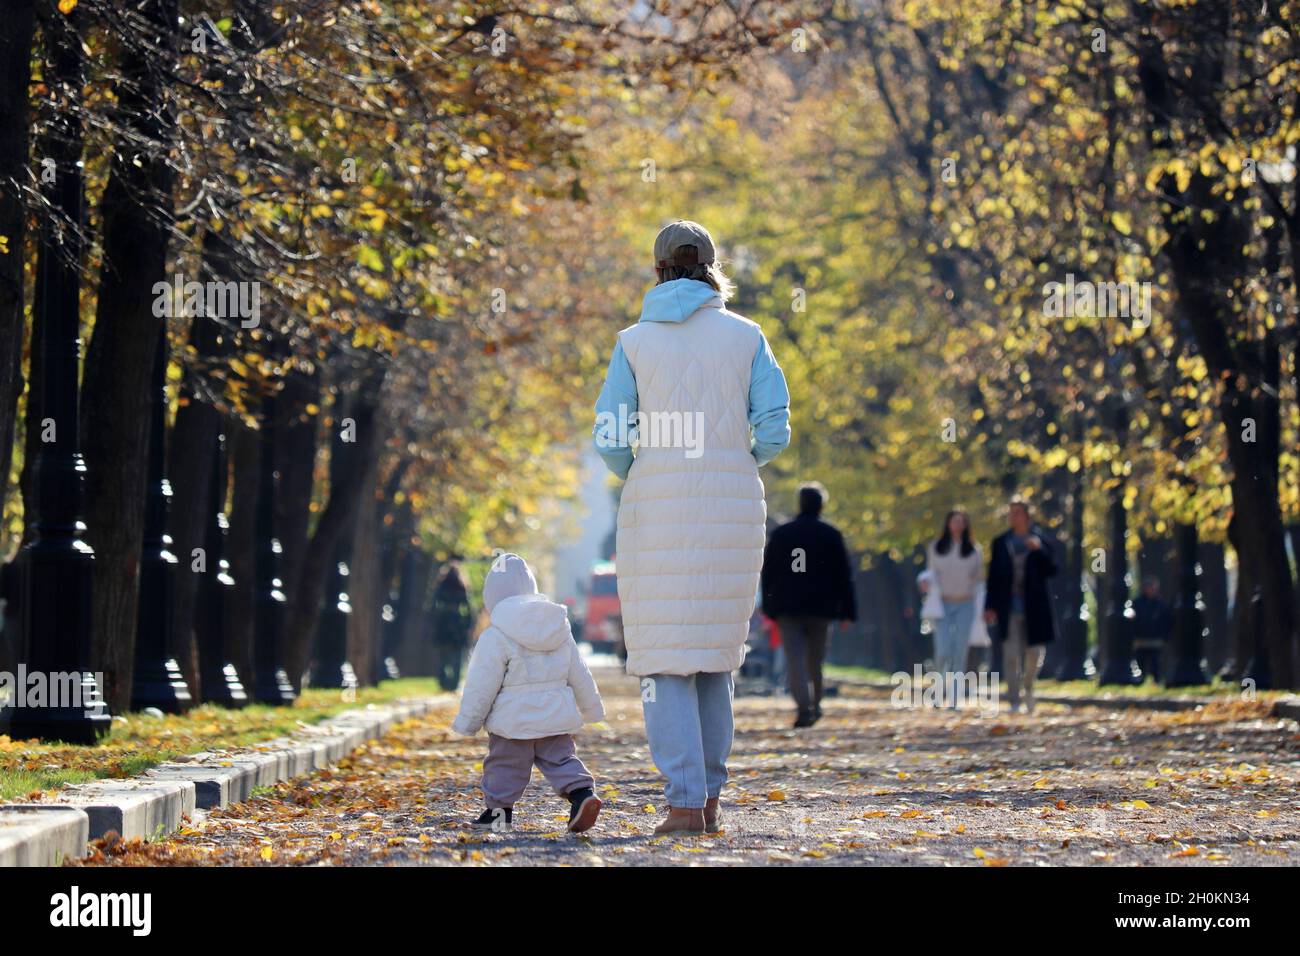 Madre y niño están caminando en el parque de otoño. Mujer joven esbelta y niño corriendo, concepto de maternidad, madre soltera o niñera Foto de stock